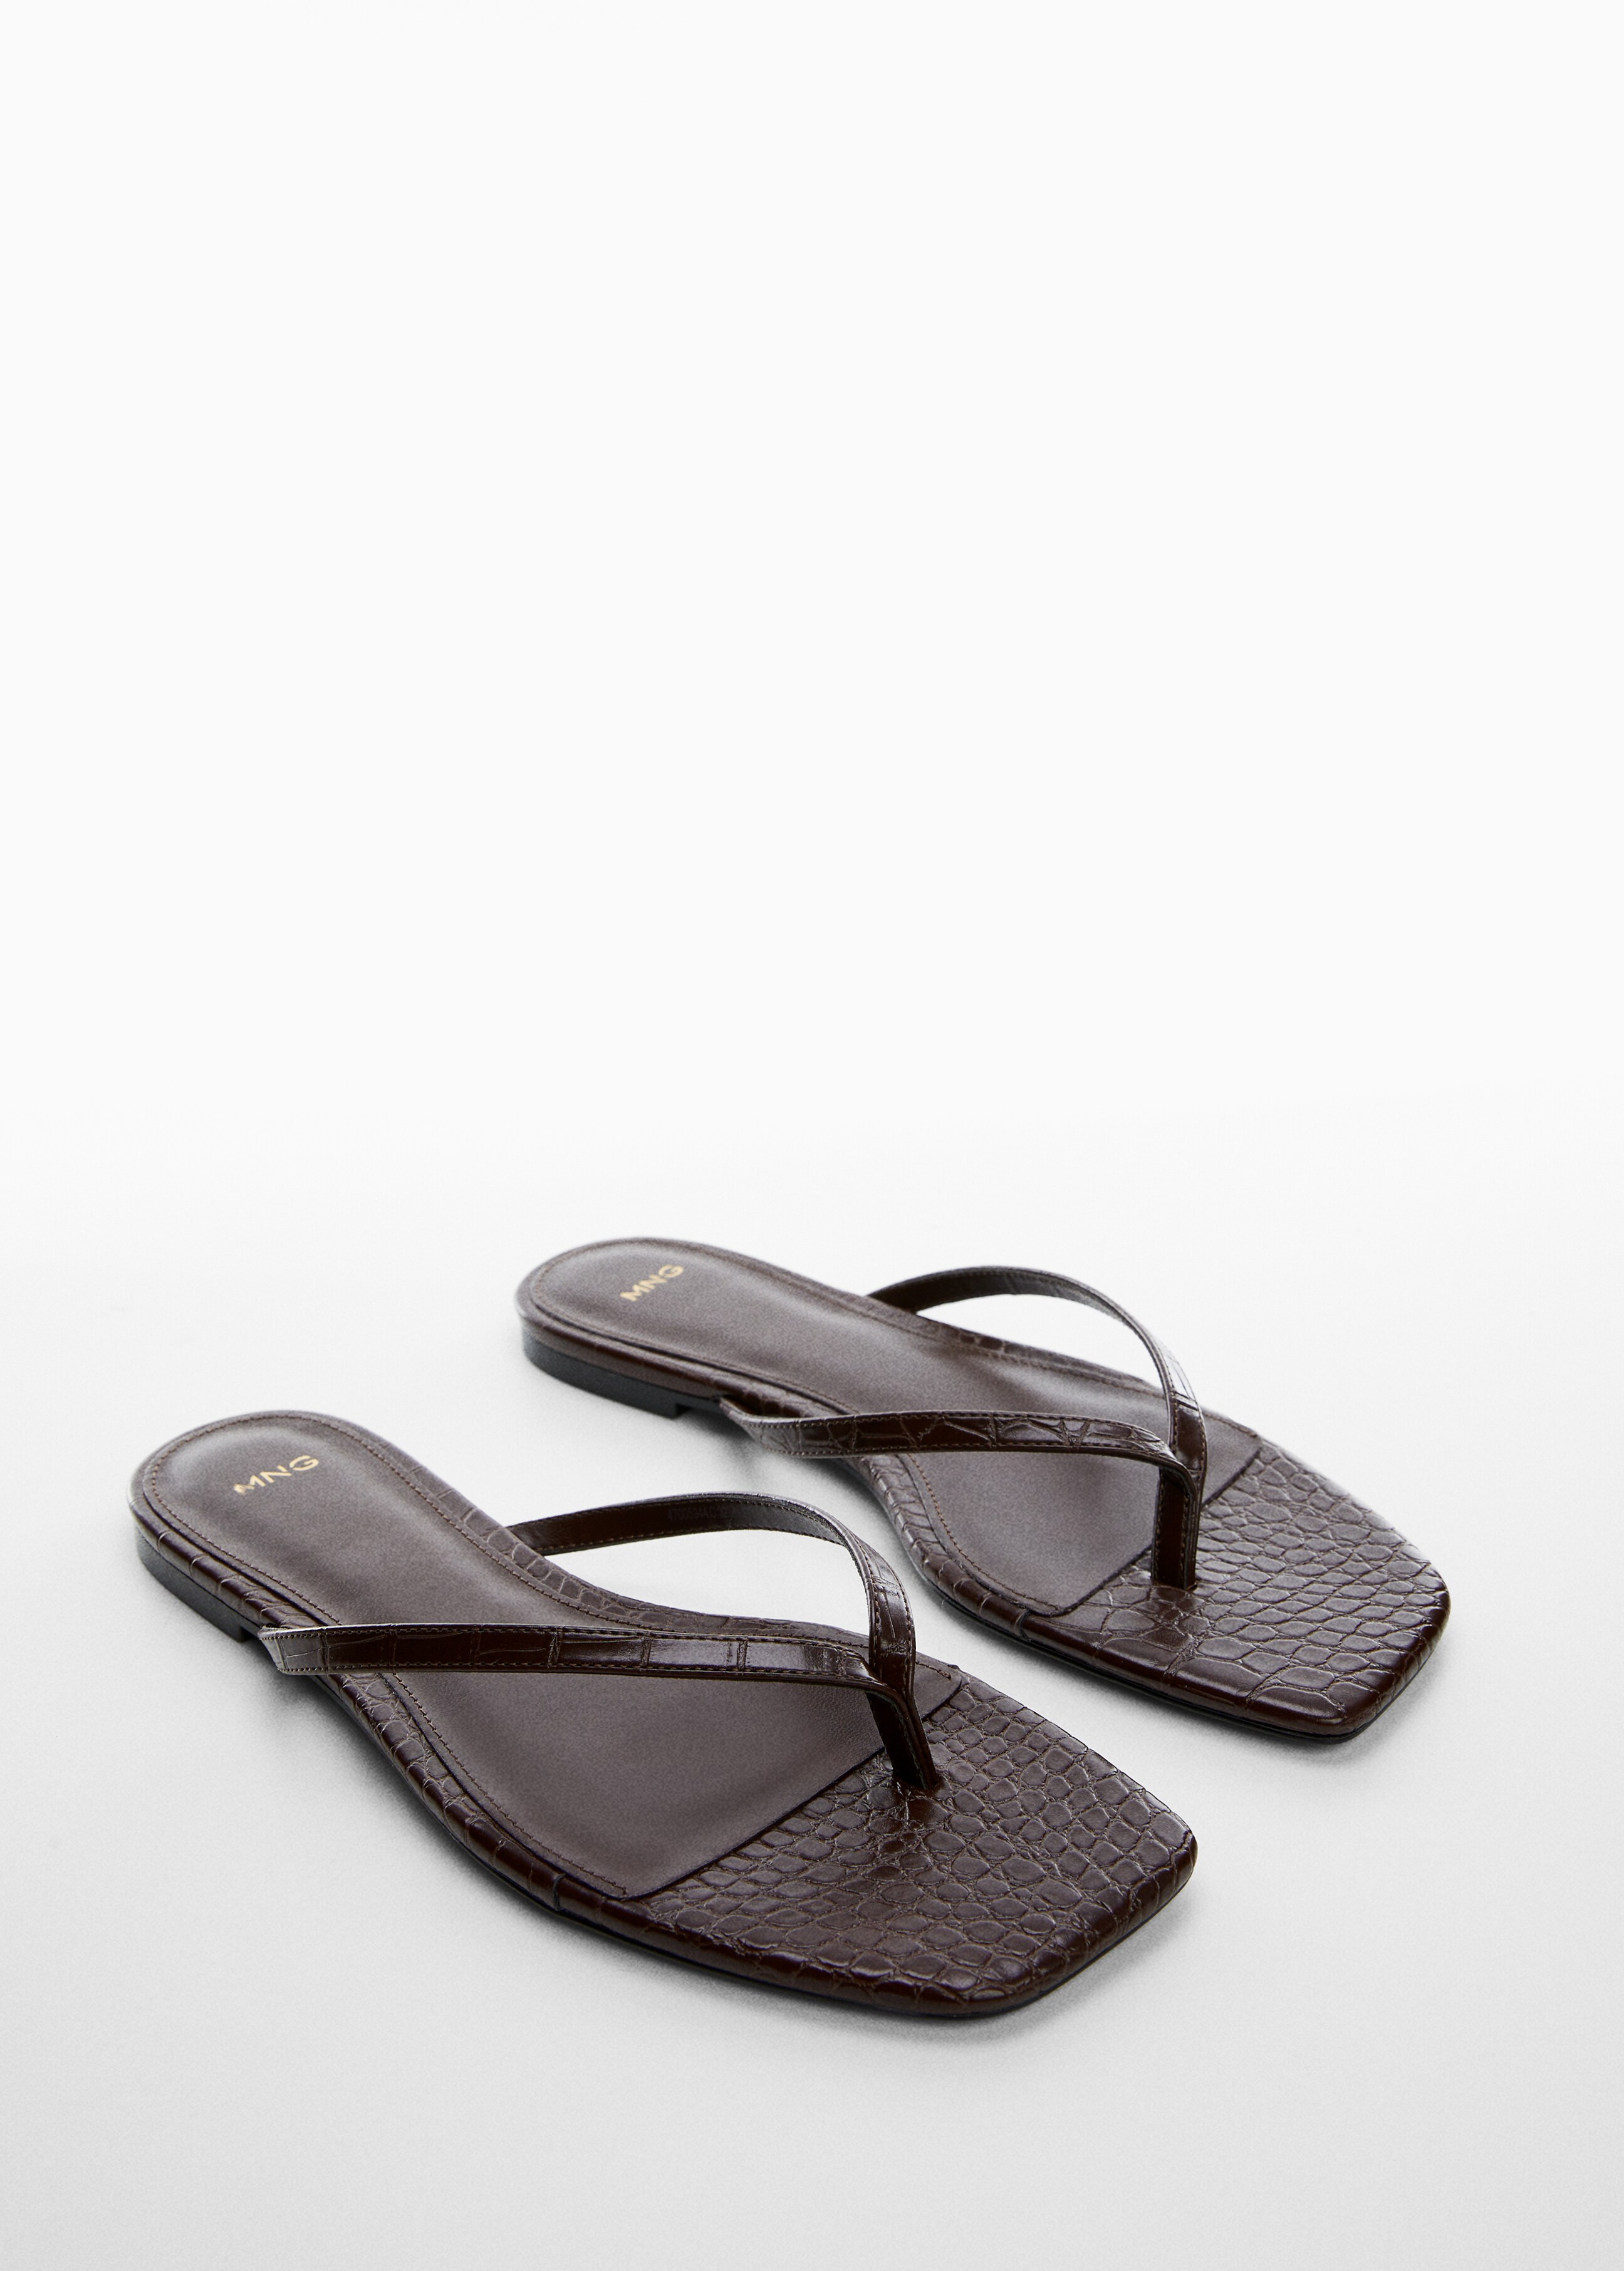 Croc-effect sandals - Medium plane